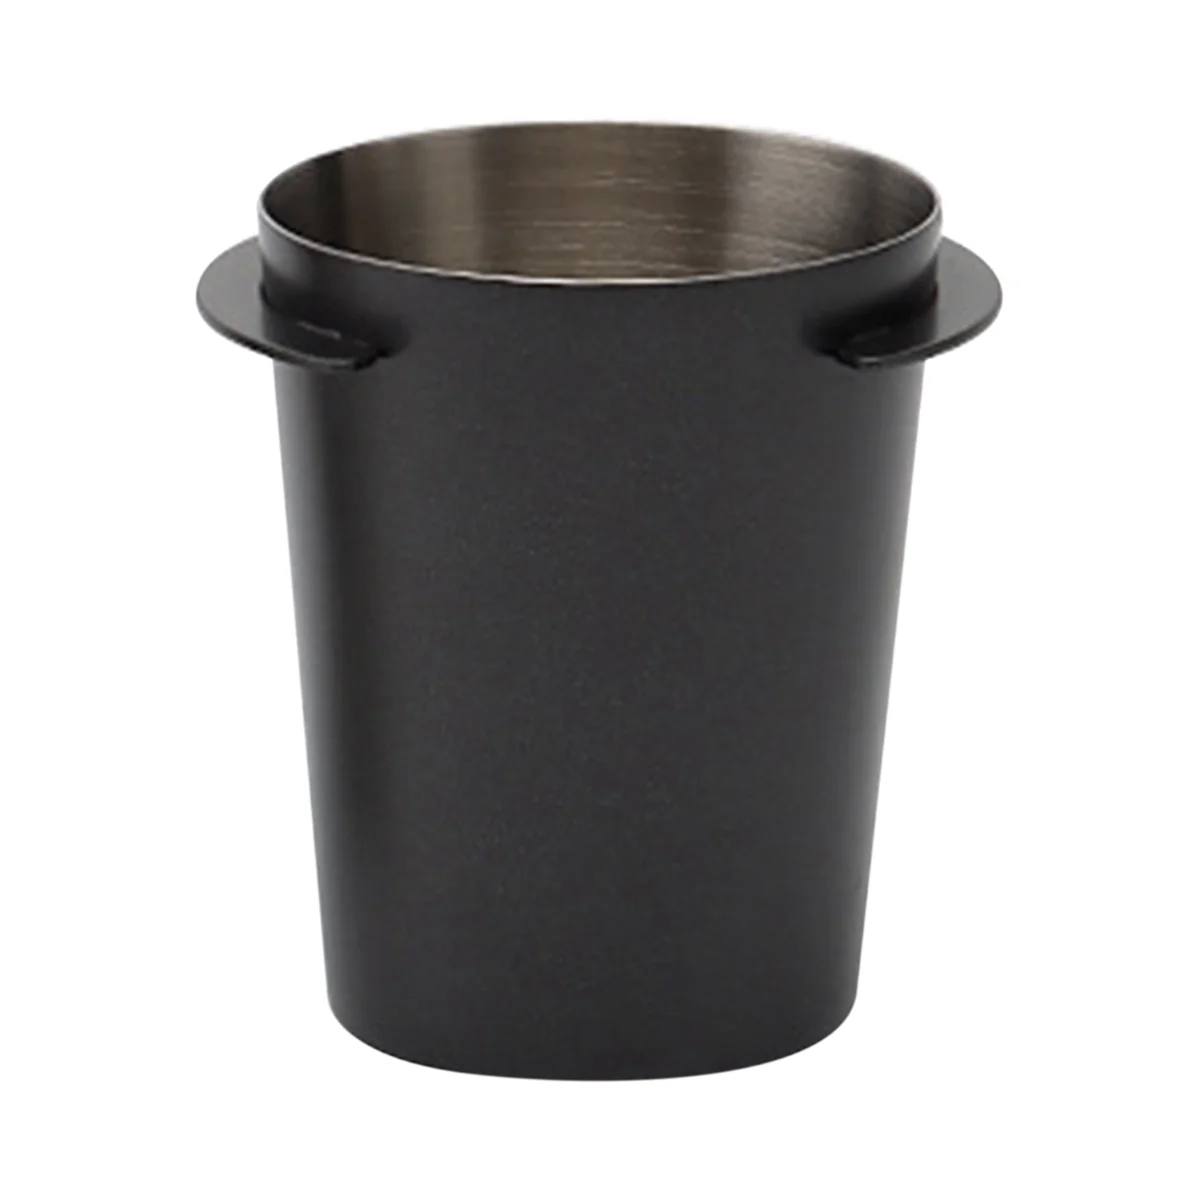 

51 мм, зеркальная кофейная кружка для эспрессо, износостойкая нержавеющая сталь, цвет черный